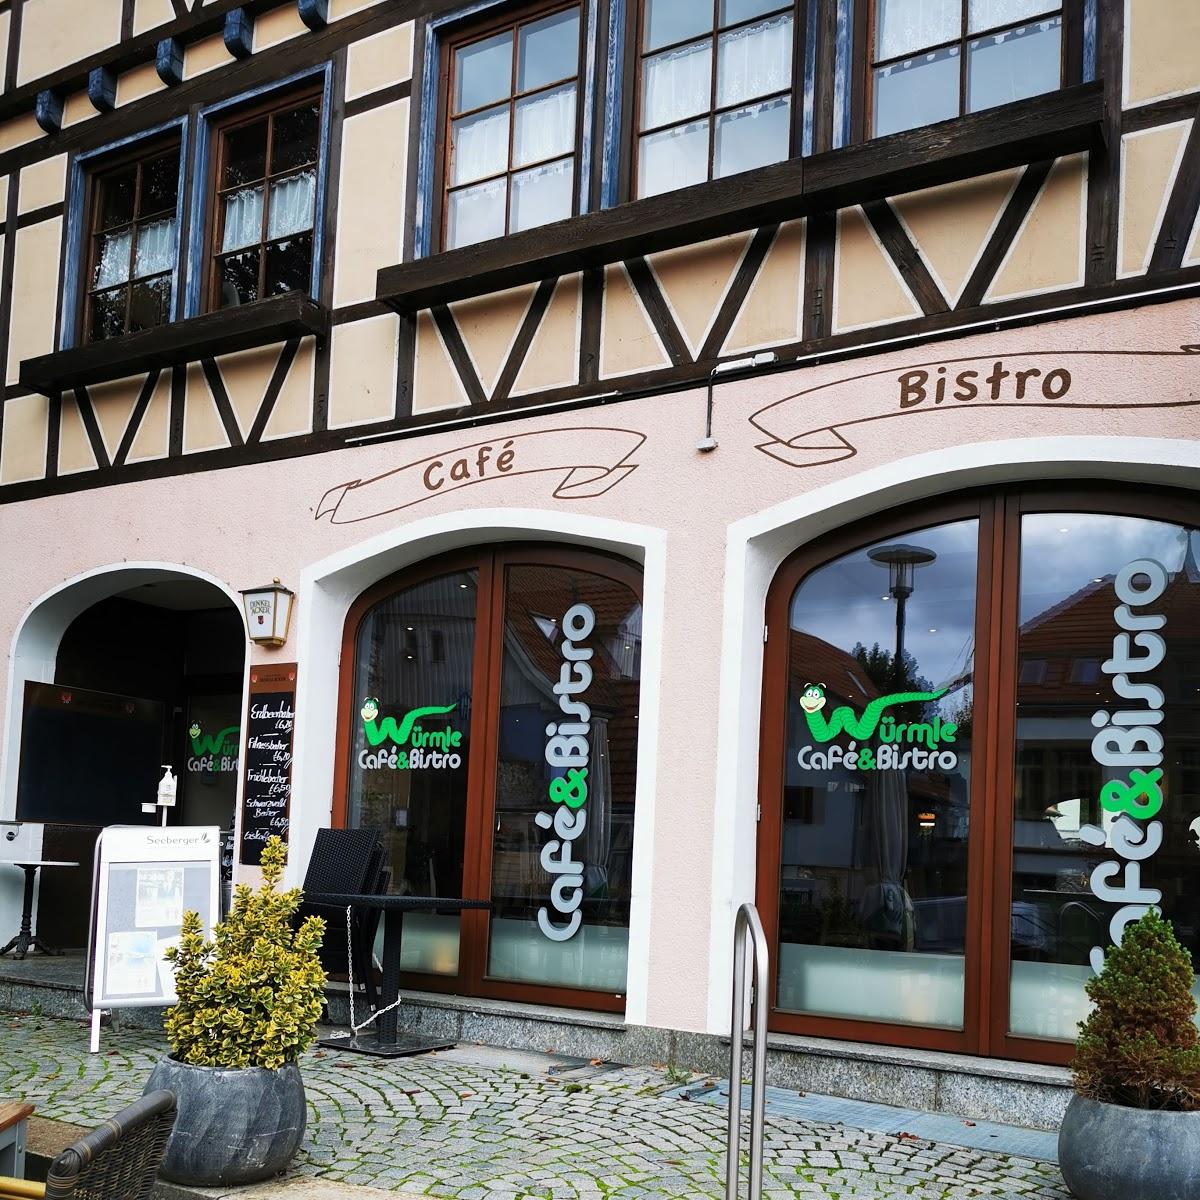 Restaurant "Café & Bistro Würmle" in Mühlacker